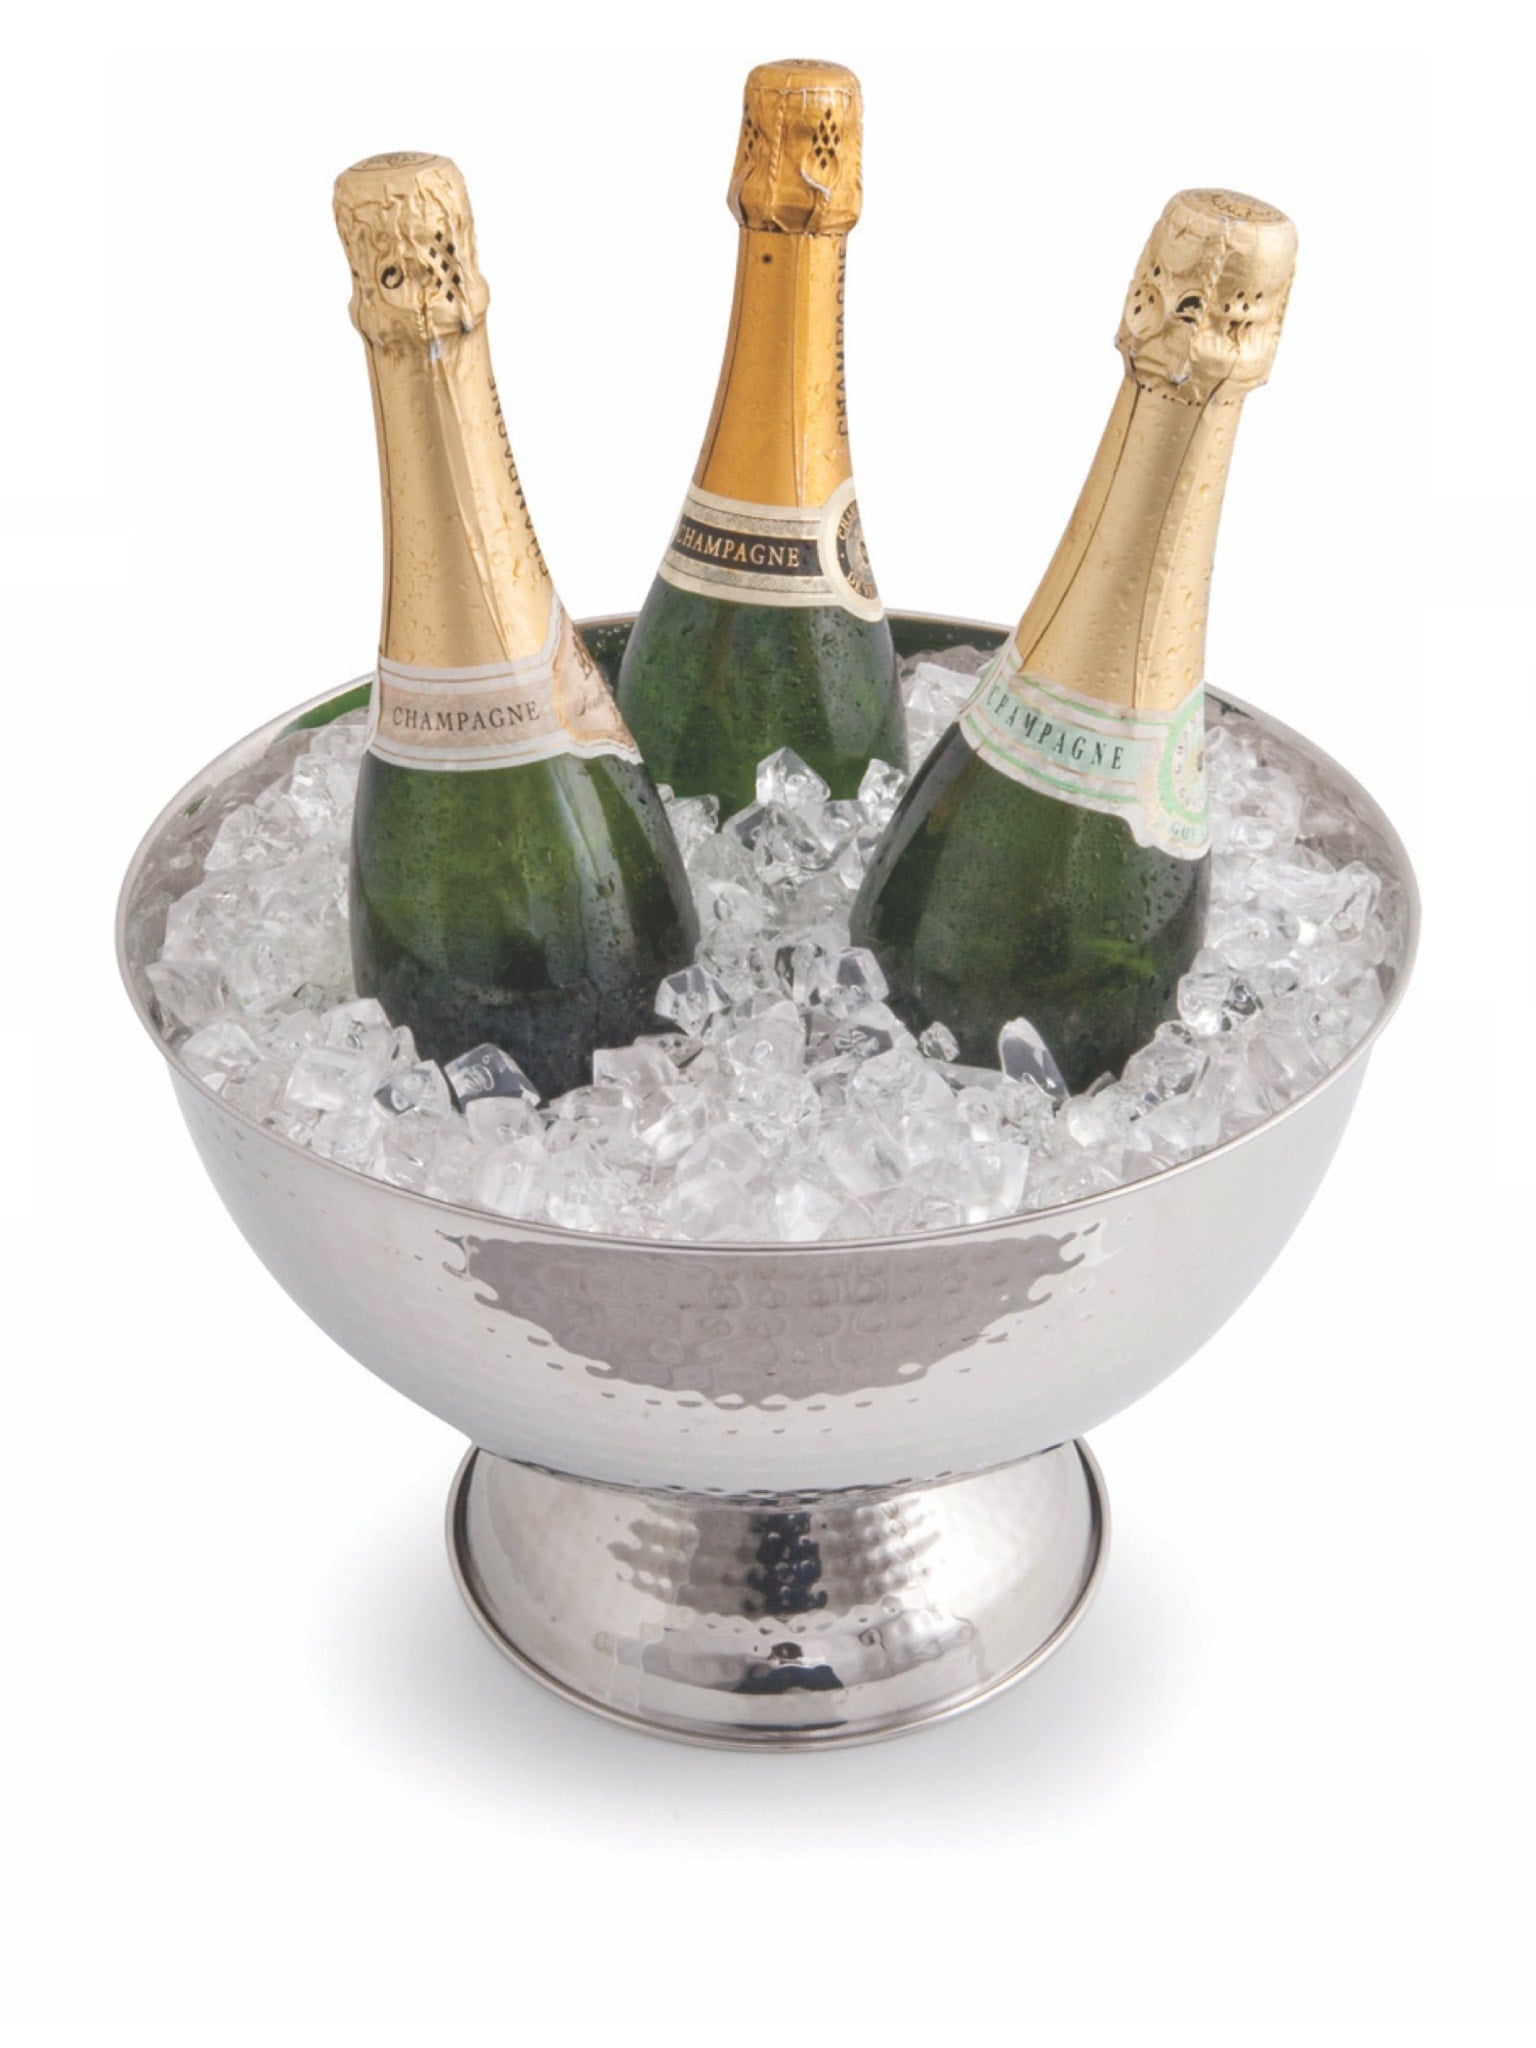 Champagne-bolle med en kapacitet - Perfekt til festlige anledninger.